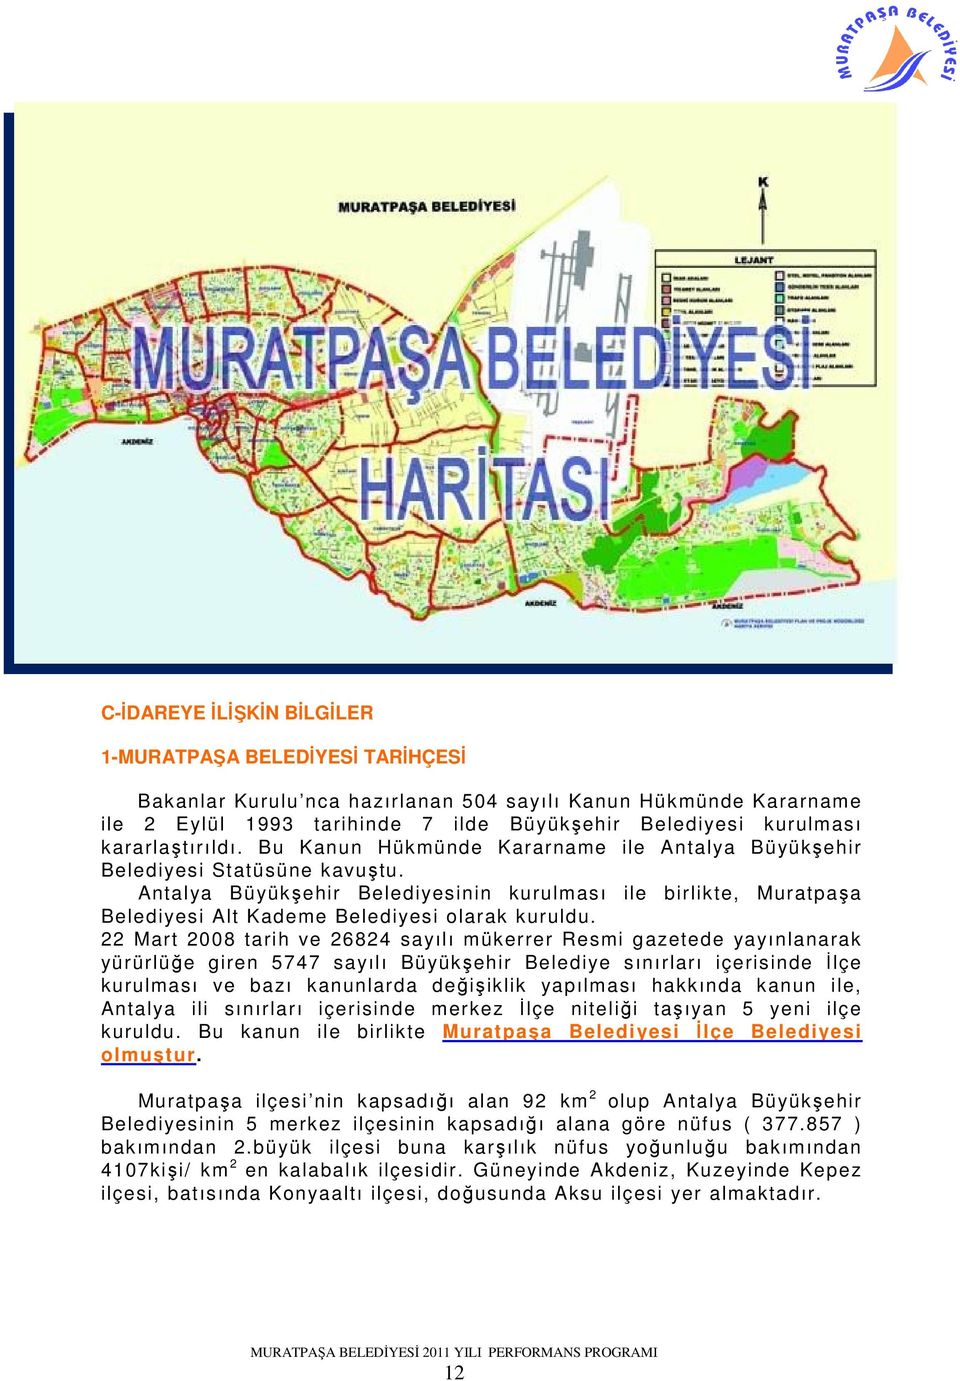 Antalya Büyükşehir Belediyesinin kurulması ile birlikte, Muratpaşa Belediyesi Alt Kademe Belediyesi olarak kuruldu.